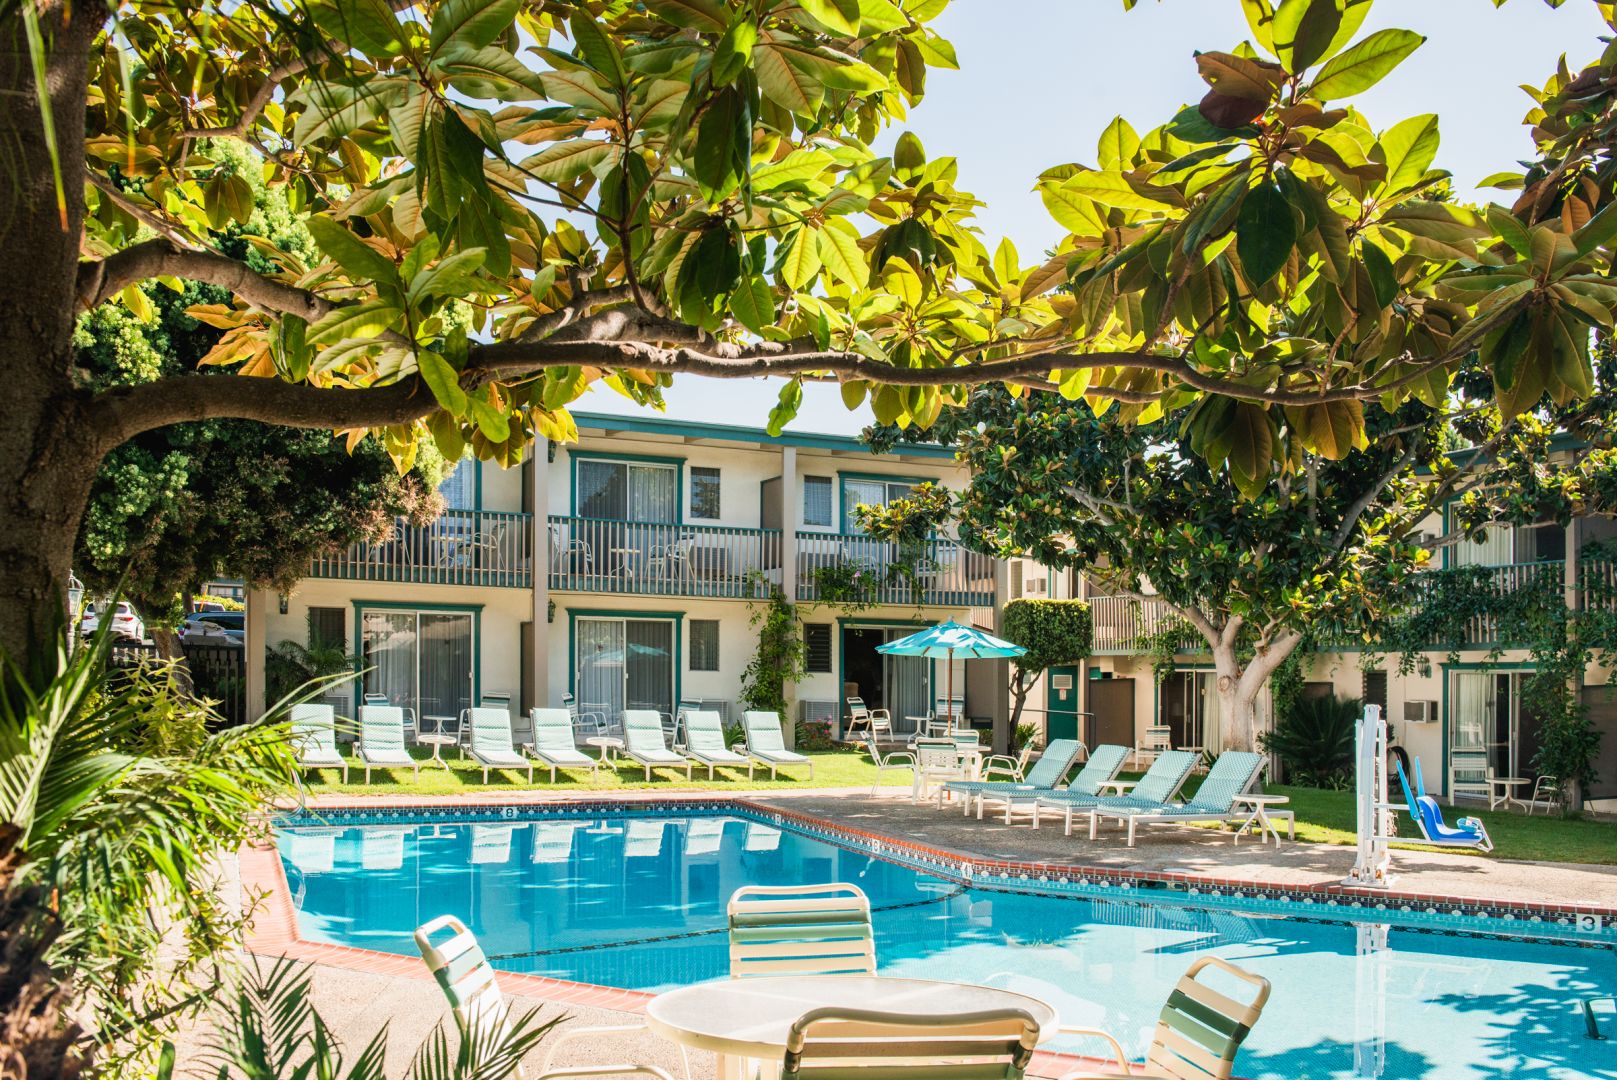 Best Western Plus Santa Barbara outdoor pool